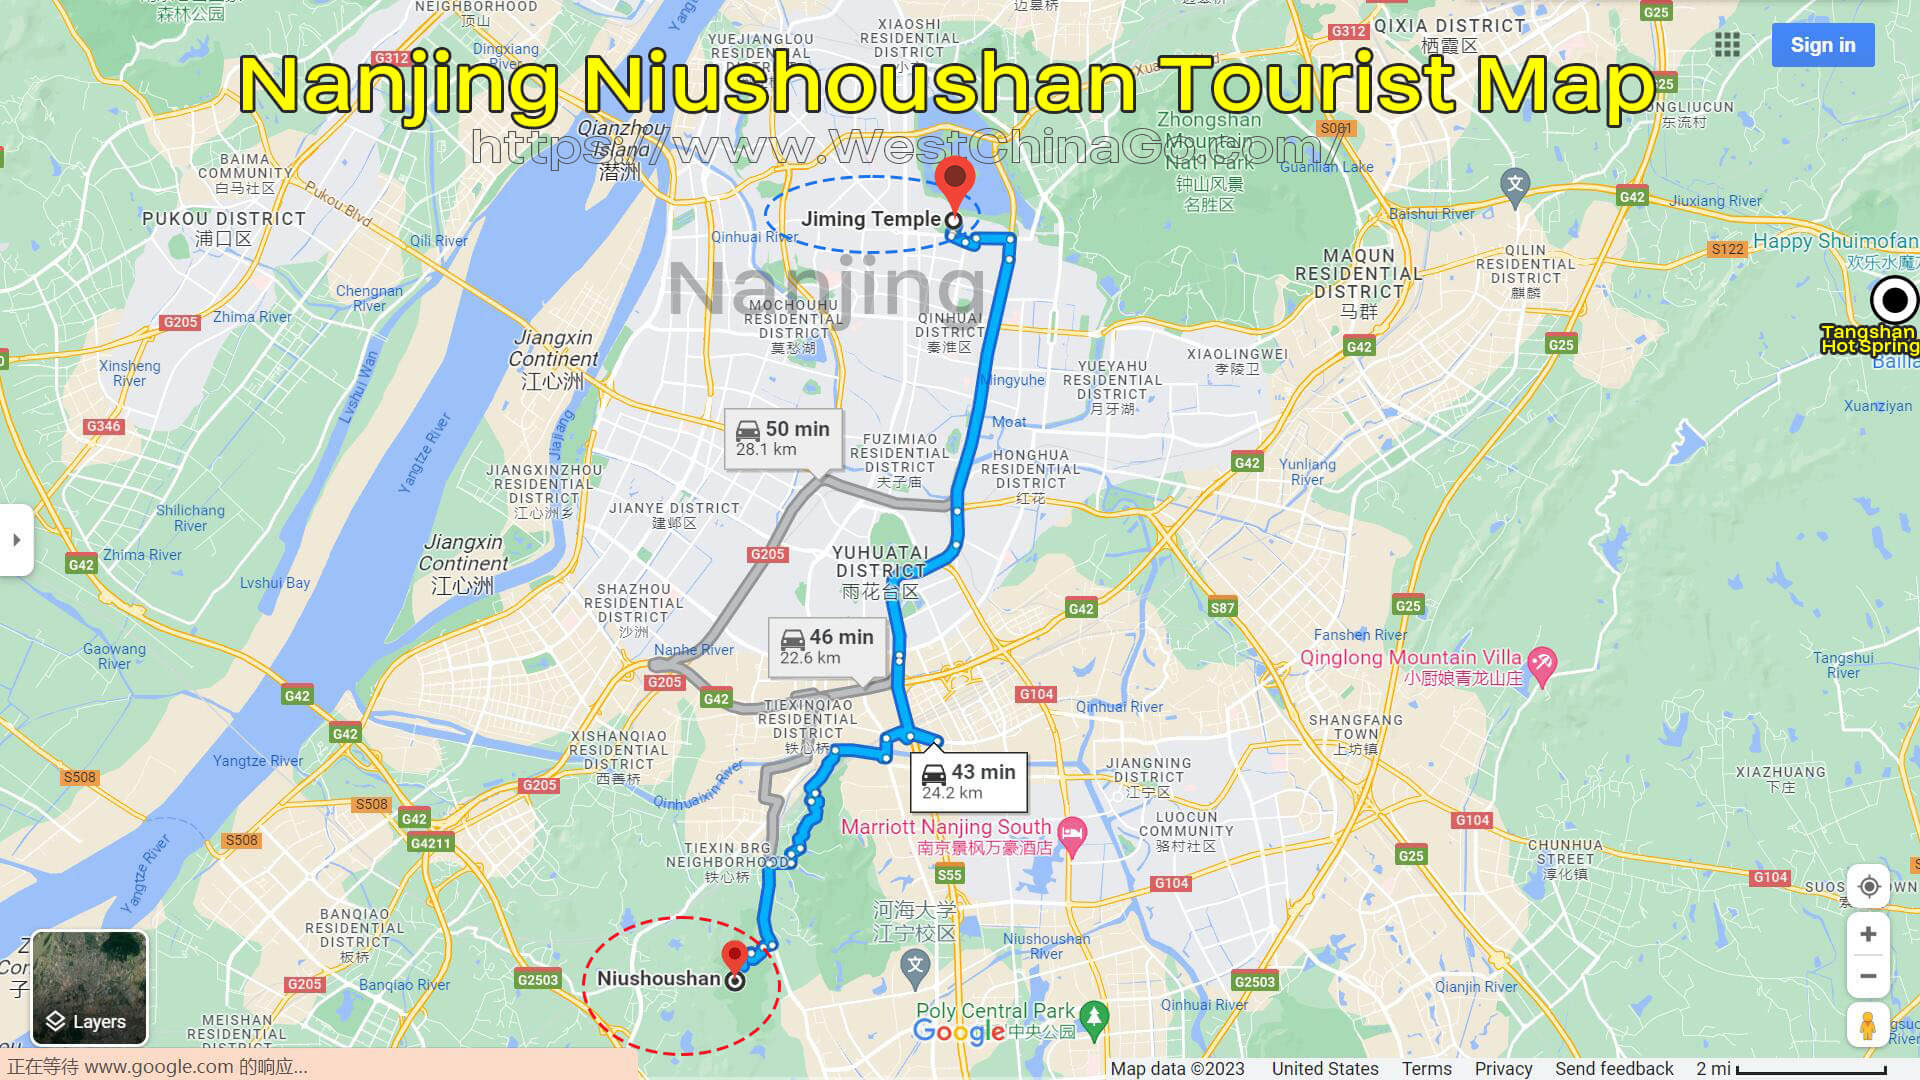 nanjing niushoushan tourist map